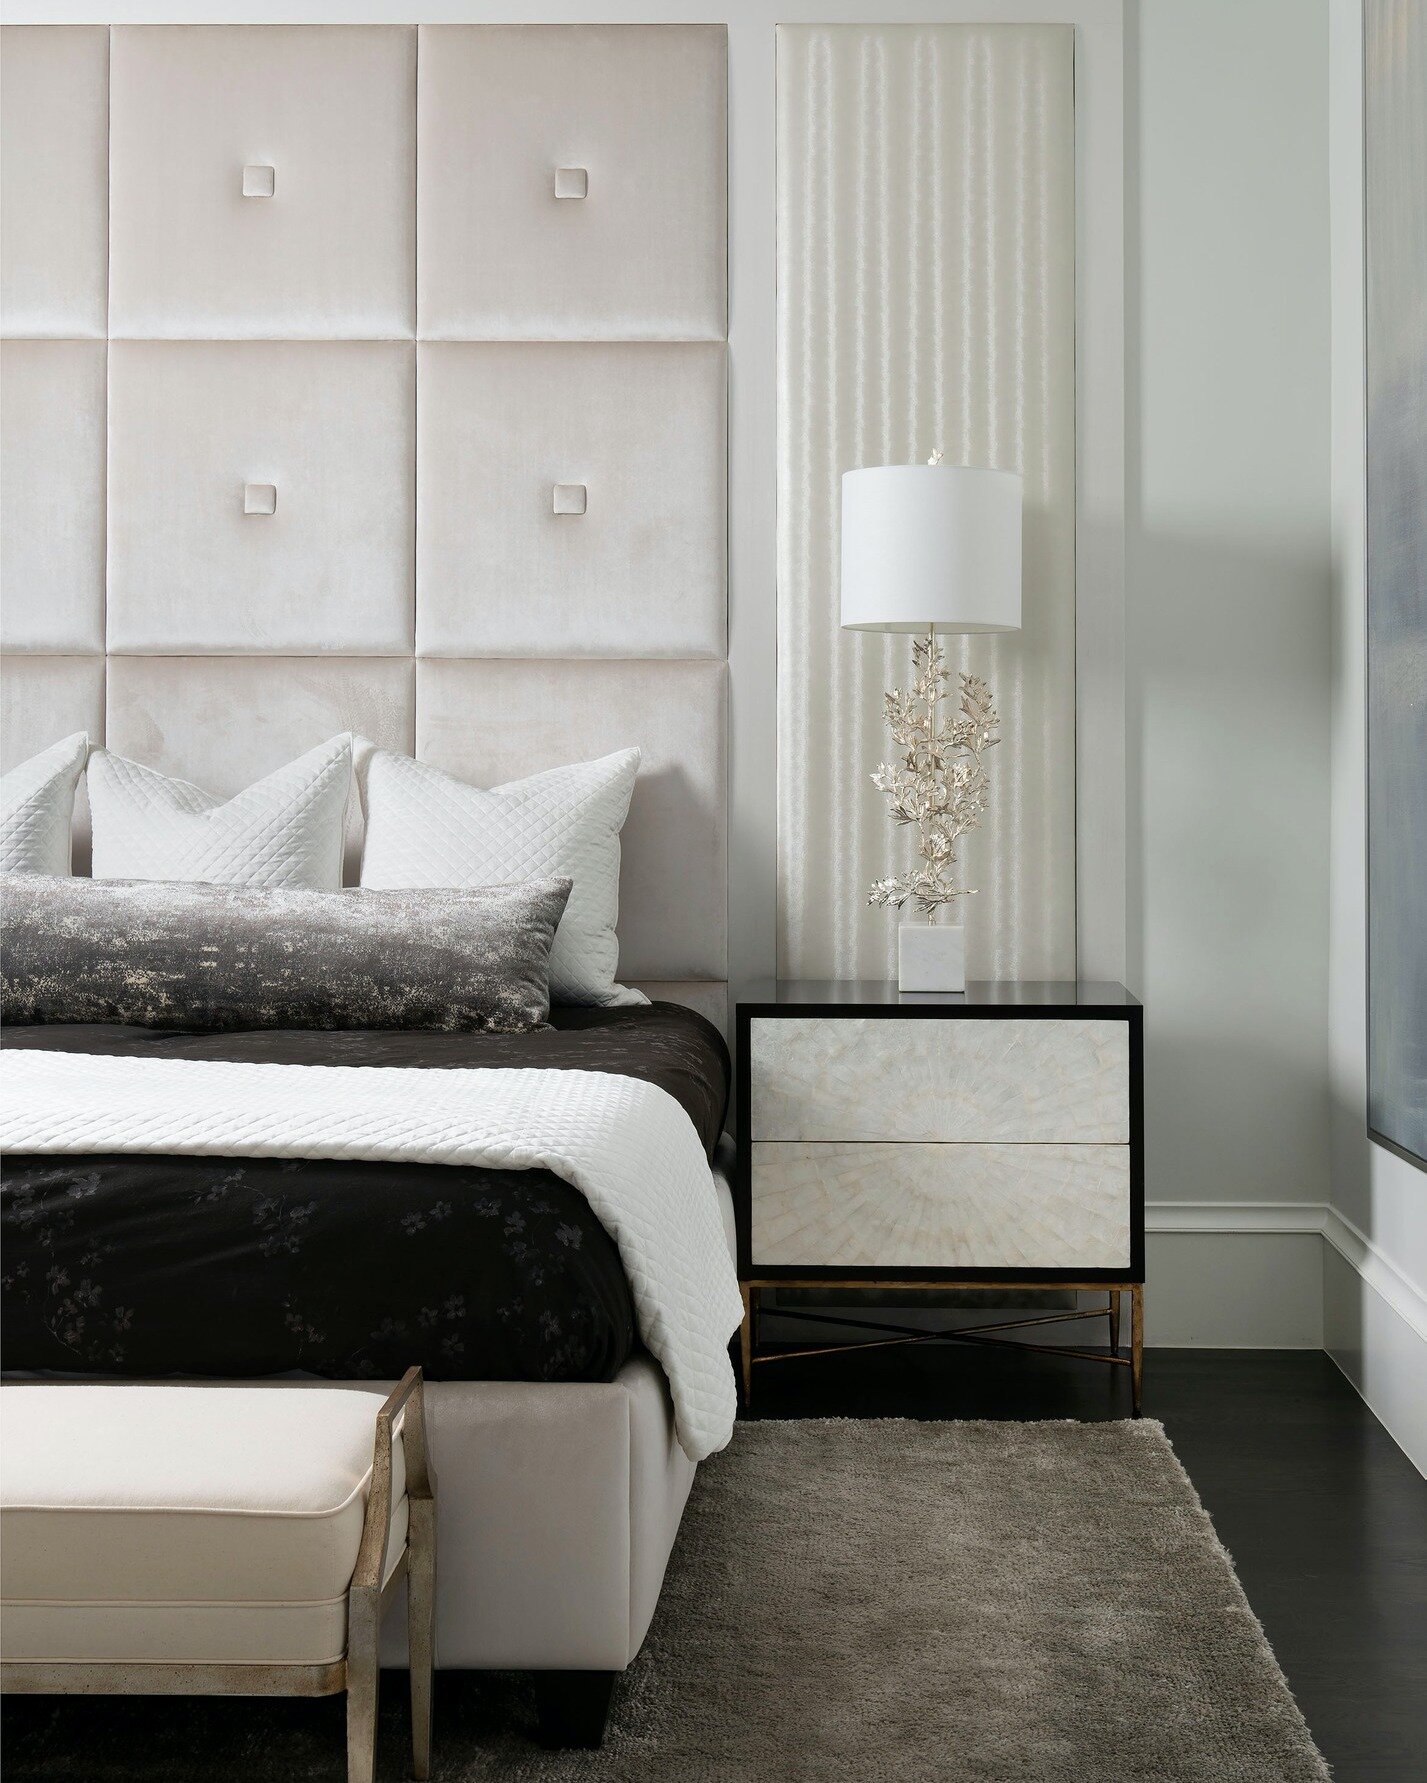 Just dreamy. 🌙
&hellip;
📸: @piassickphoto
.
.
.
#dallasdesigngroup #ddg #dallasdesign #home #interiordesign #interiorstyling #luxuryhome #bedroom #bedroomdecor #bedroomstyling #contemporarybedroom #neutralbedroom #luxurybedroom